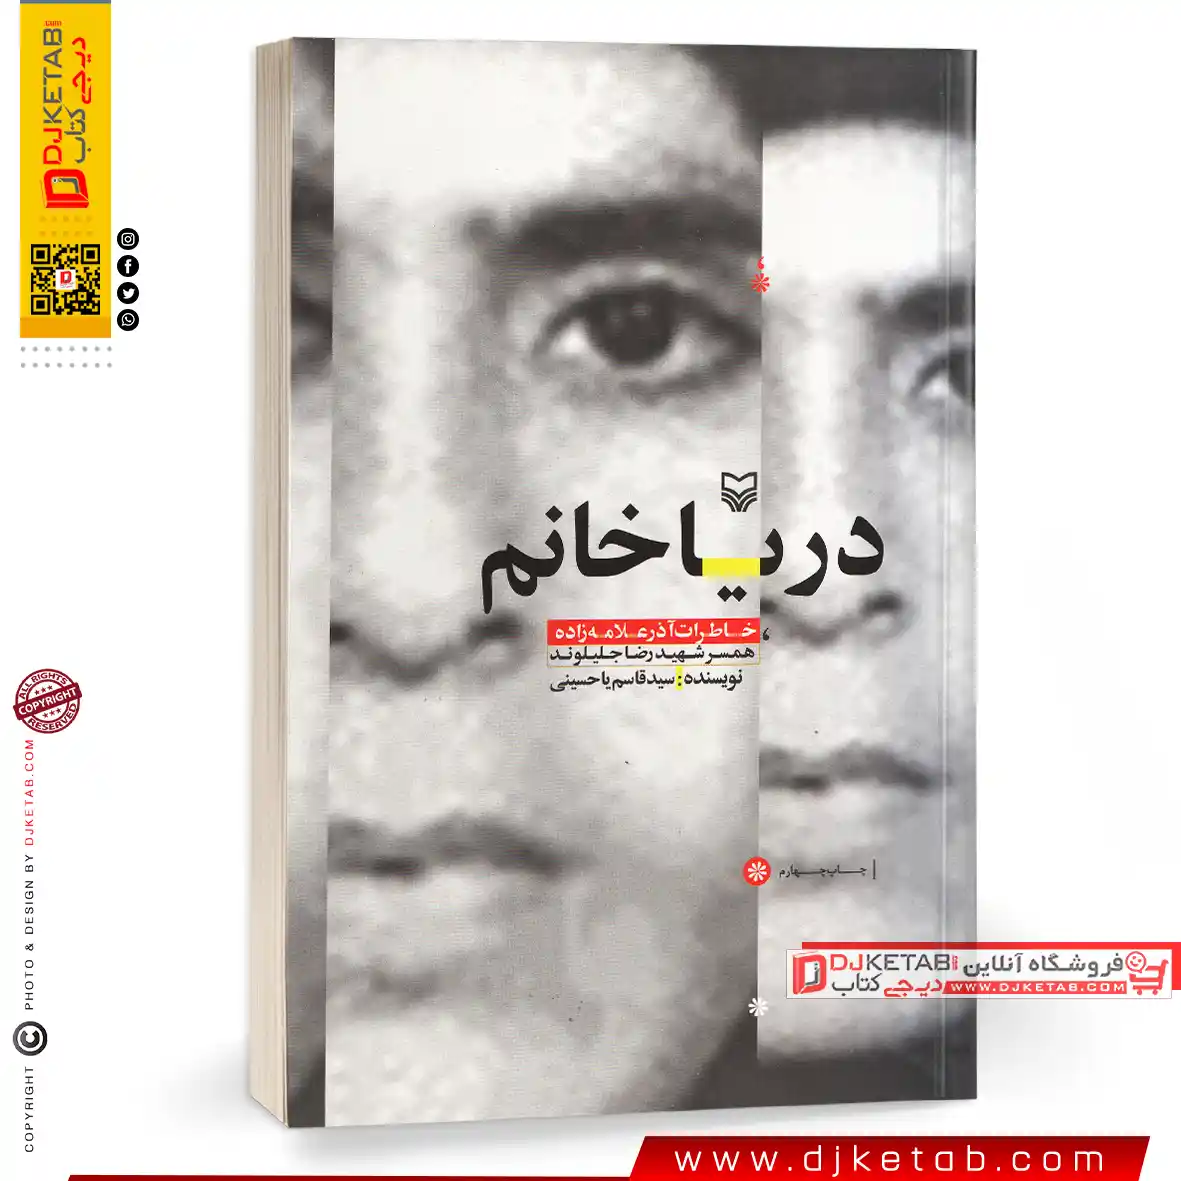 کتاب دریا خانم (خاطرات آذر علامه همسر شهید رضا جلیلوند)